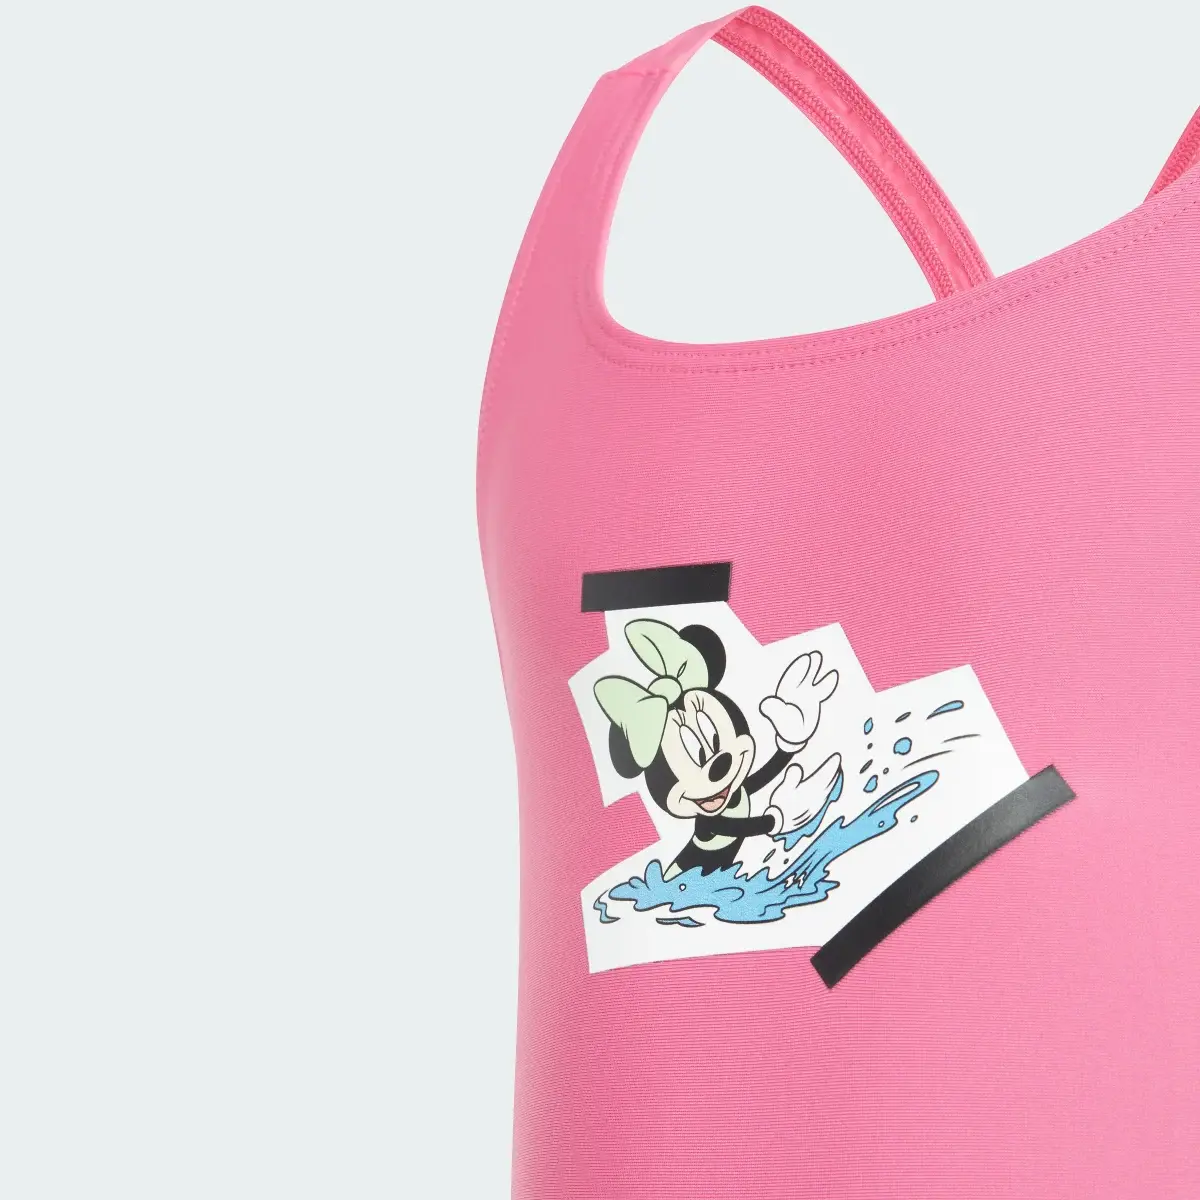 Adidas Traje de Natación adidas x Disney Minnie Vacation Memories 3 Franjas. 3